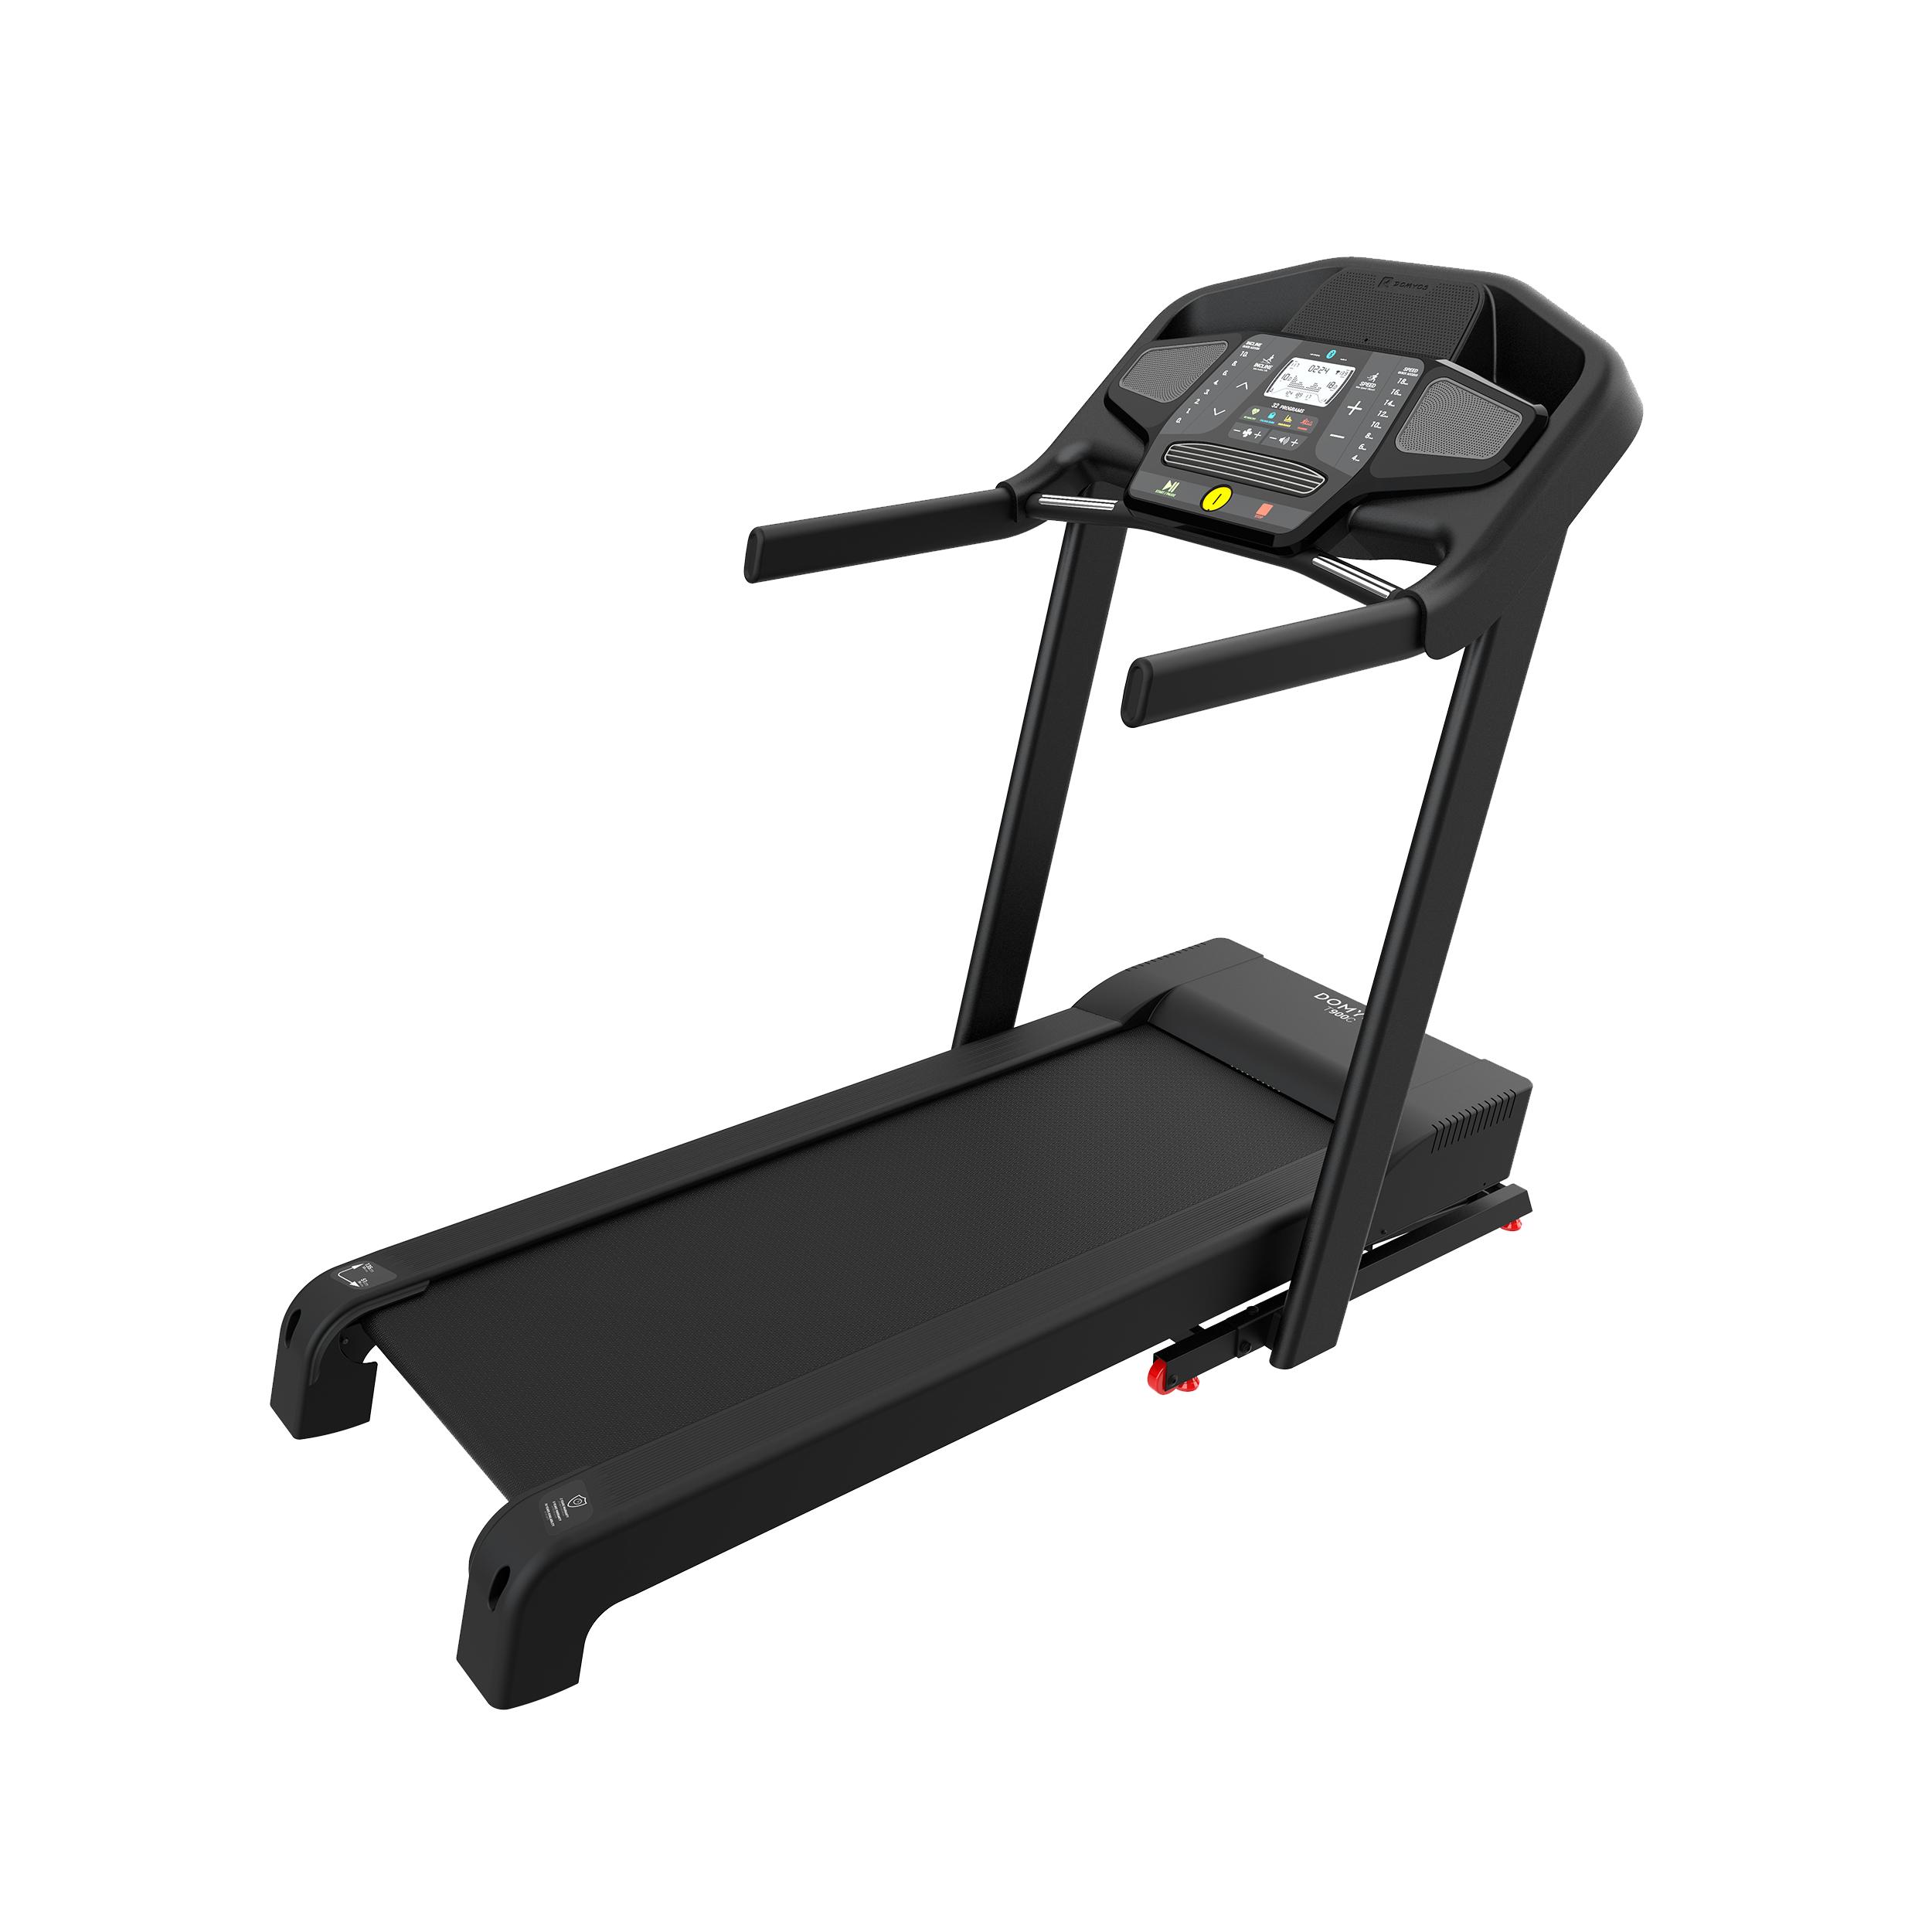 decathlon online gym equipment